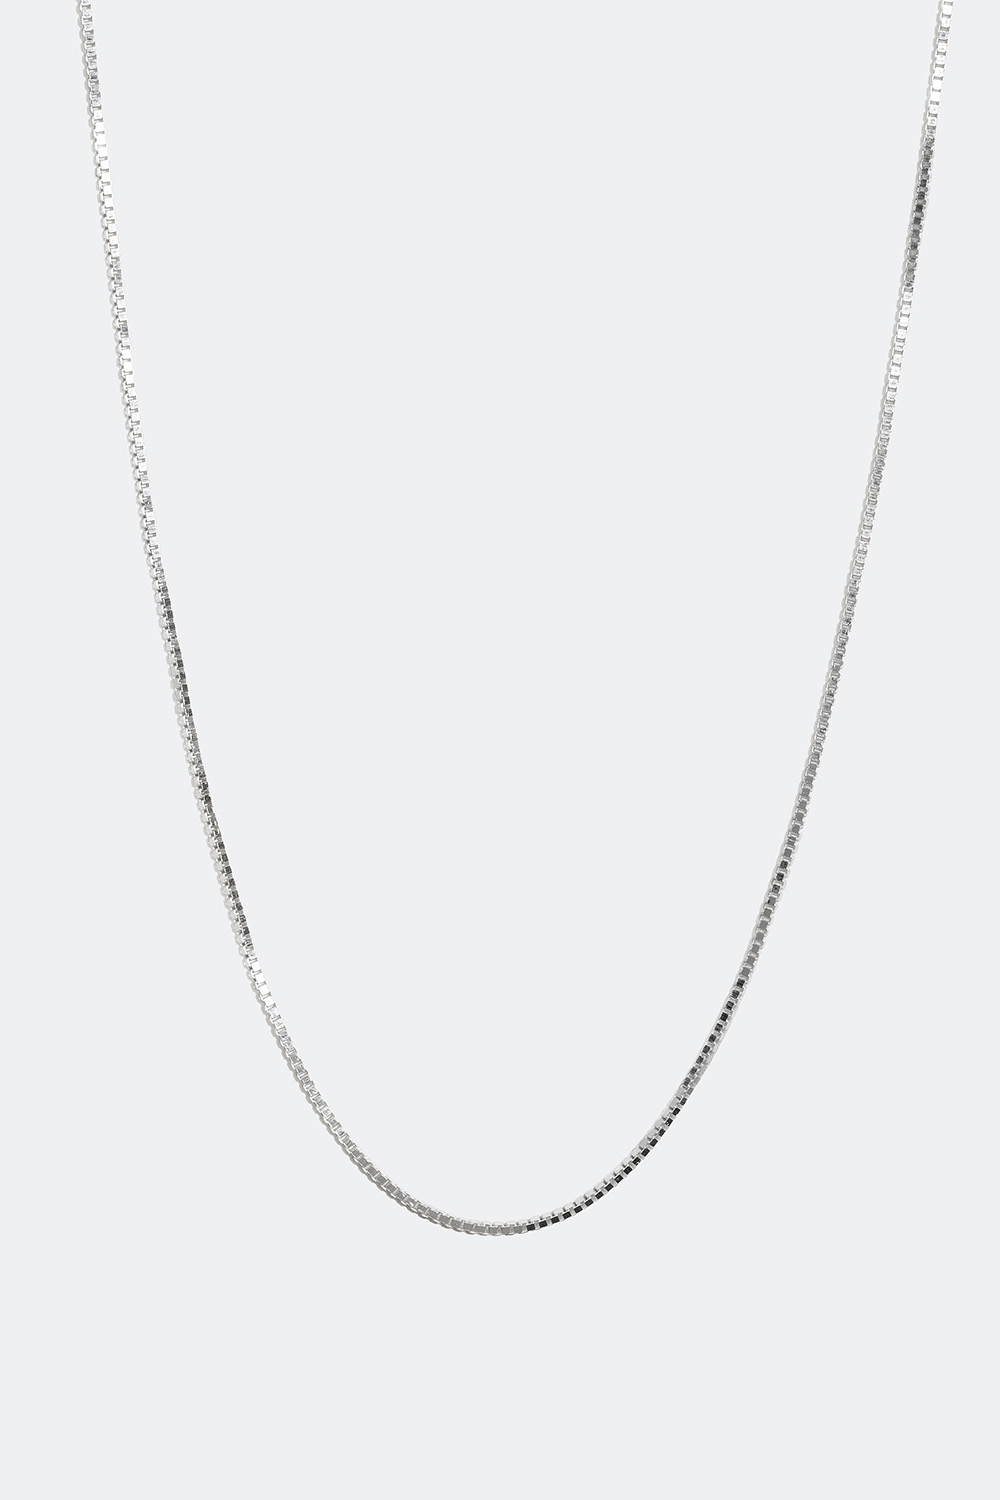 Veneziahalskæde i ægte sølv, 45 cm i gruppen Ægte sølv / Sølvhalskæder / Kæder i ægte sølv hos Glitter (554000211000)